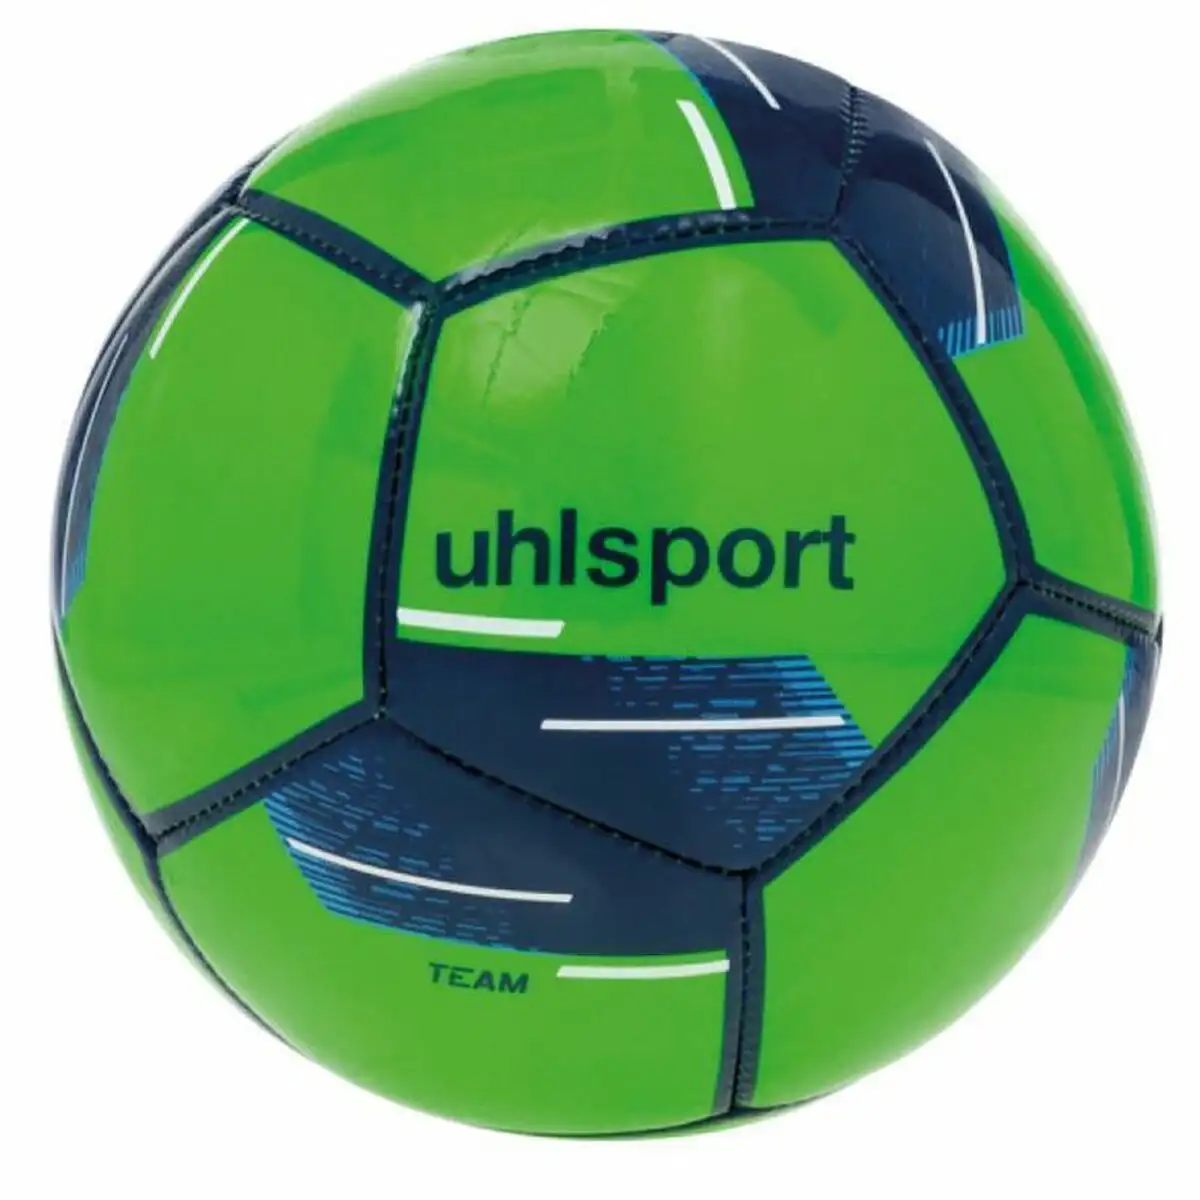 Ballon de football uhlsport team mini vert compose taille unique_8784. DIAYTAR SENEGAL - Votre Passage vers le Raffinement. Plongez dans notre univers de produits exquis et choisissez des articles qui ajoutent une touche de sophistication à votre vie.